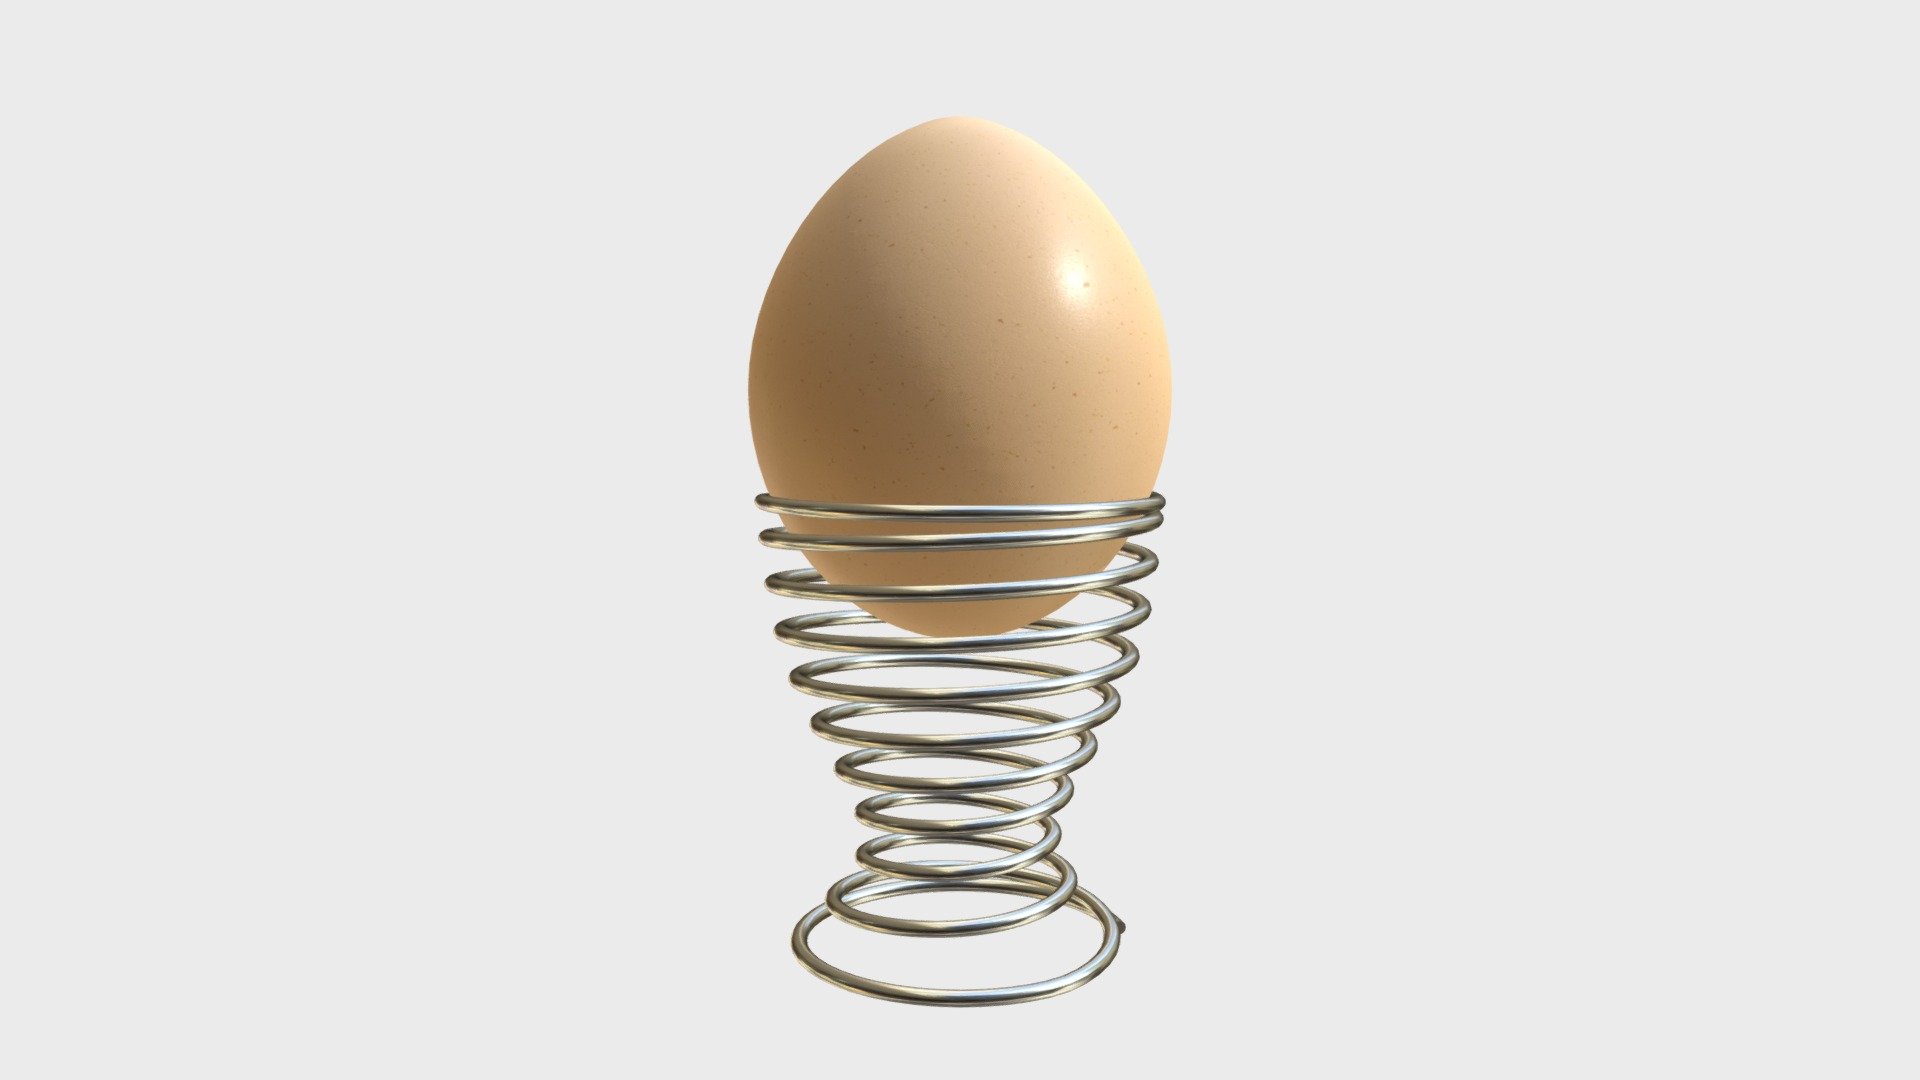 Egg on a holder